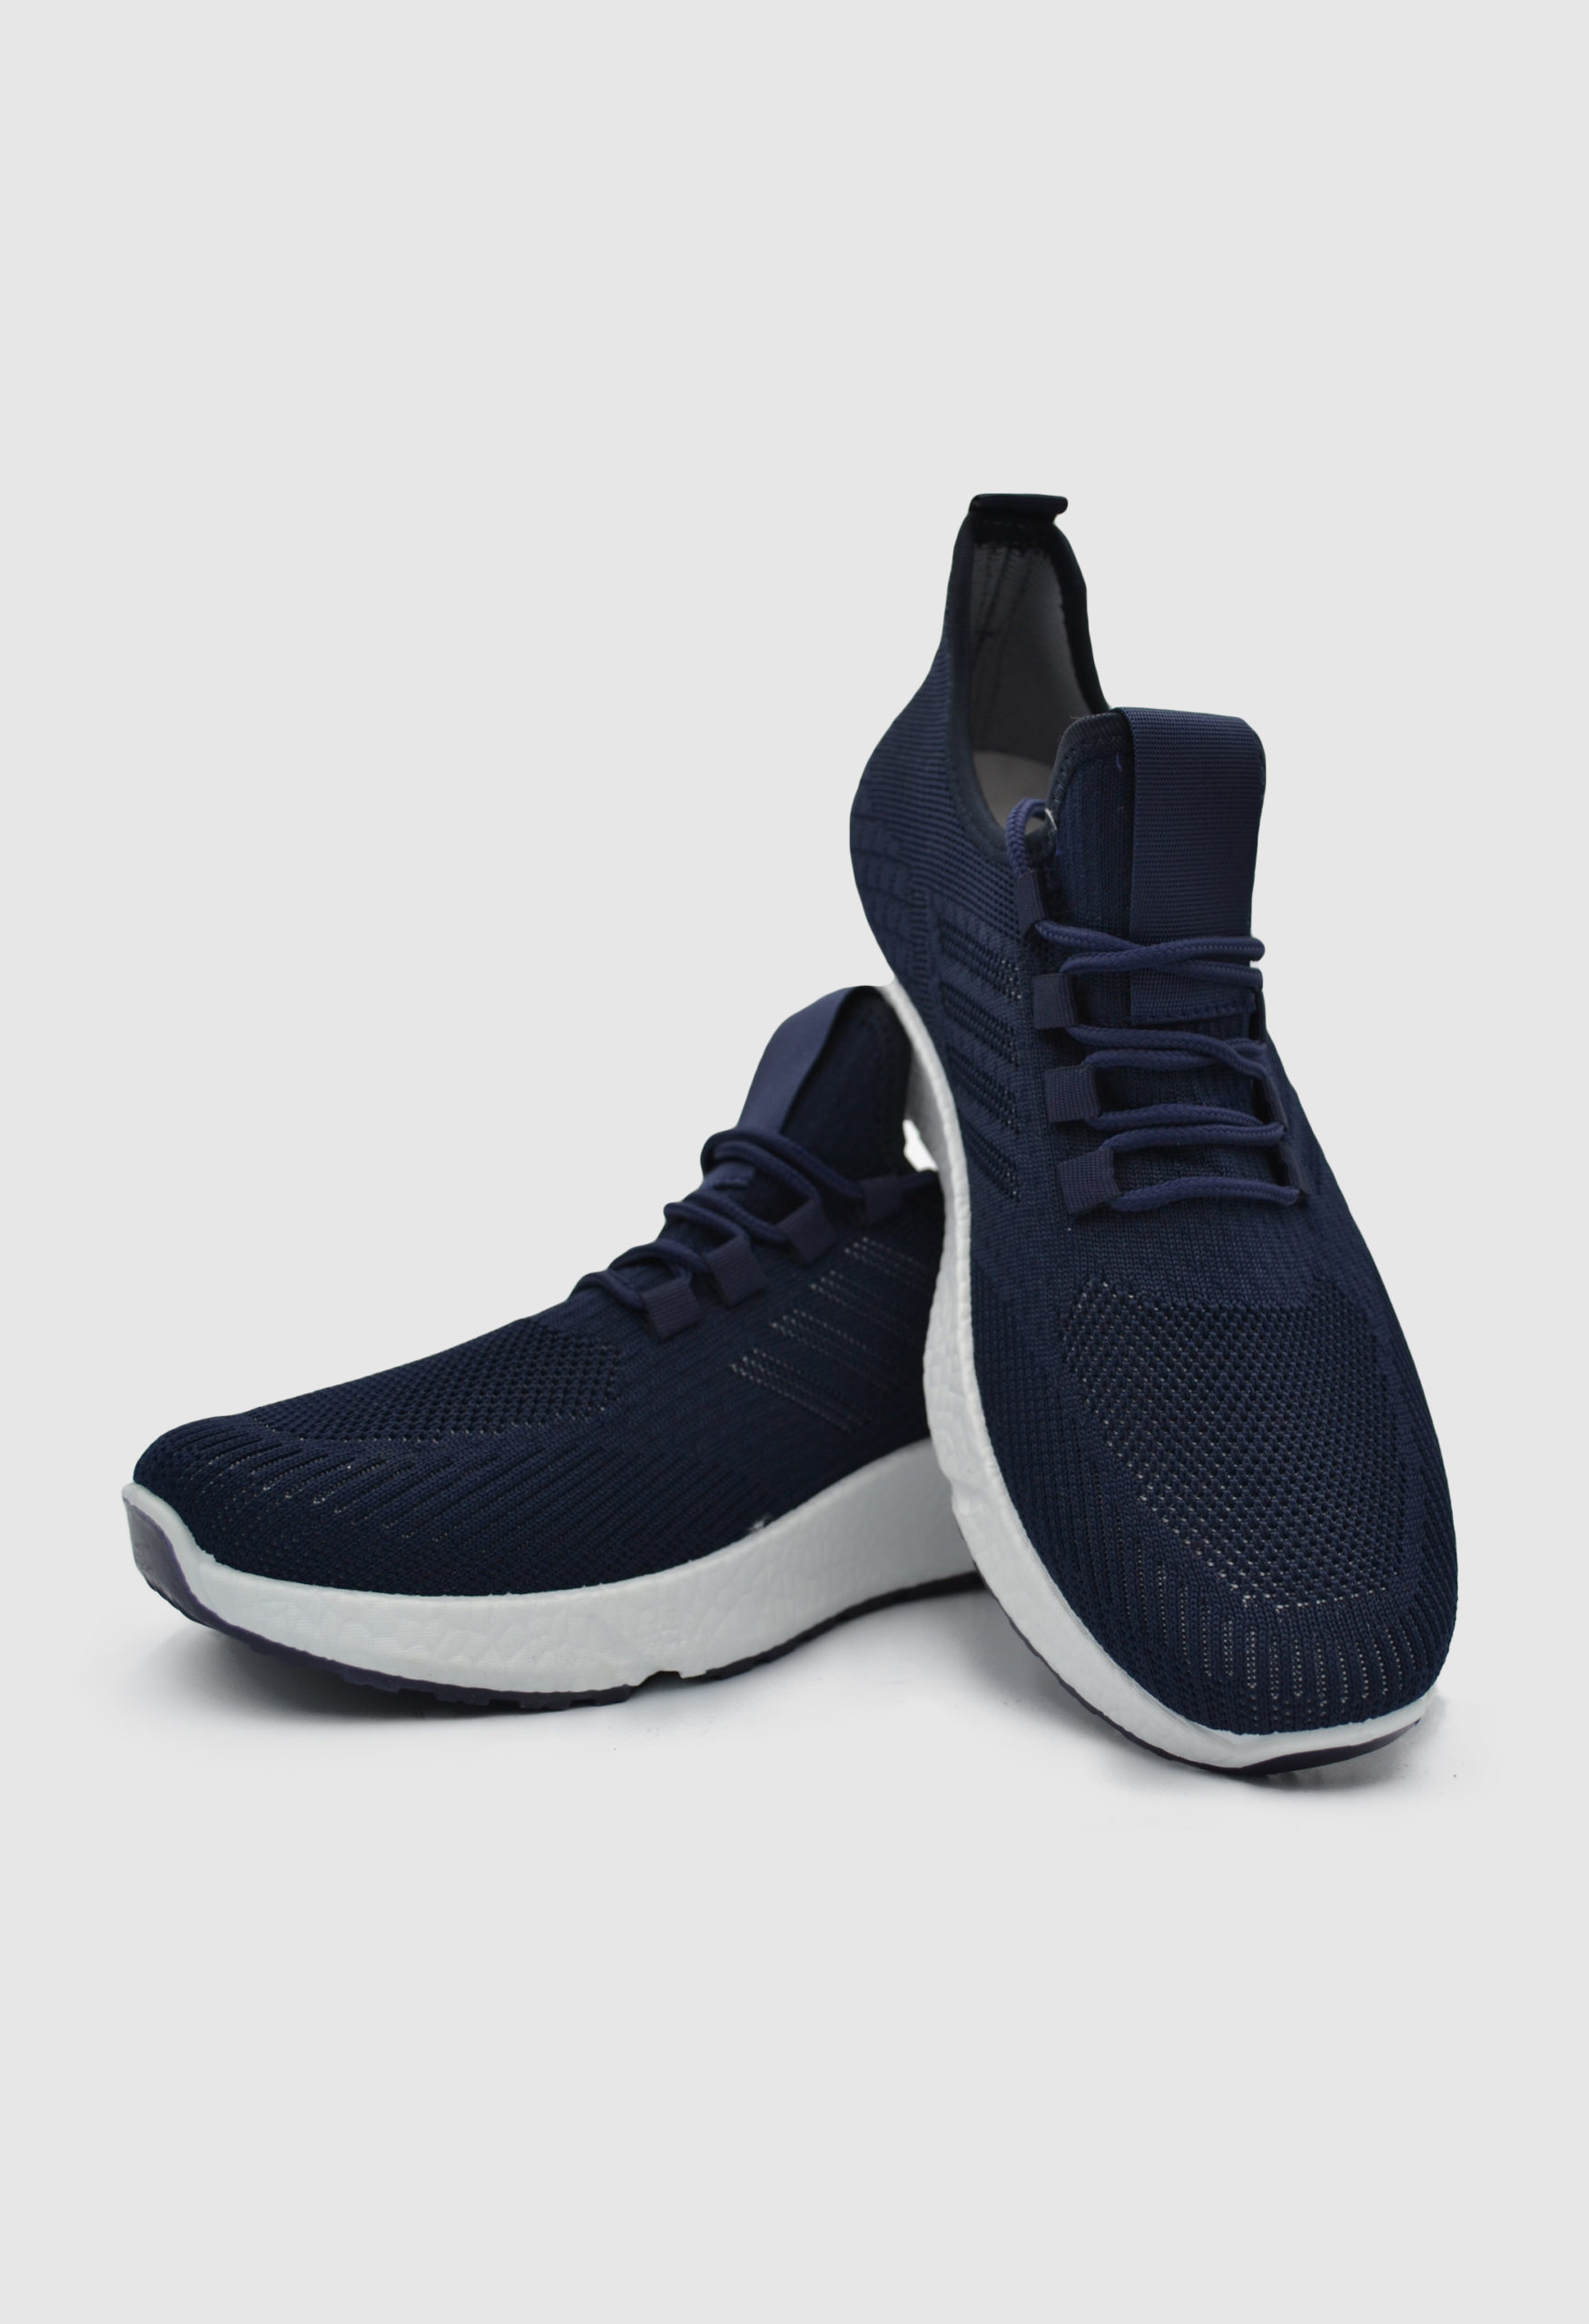 Ανδρικό Sneaker Navy Μπλε / 9711829 ΑΘΛΗΤΙΚΑ & SNEAKERS joya.gr